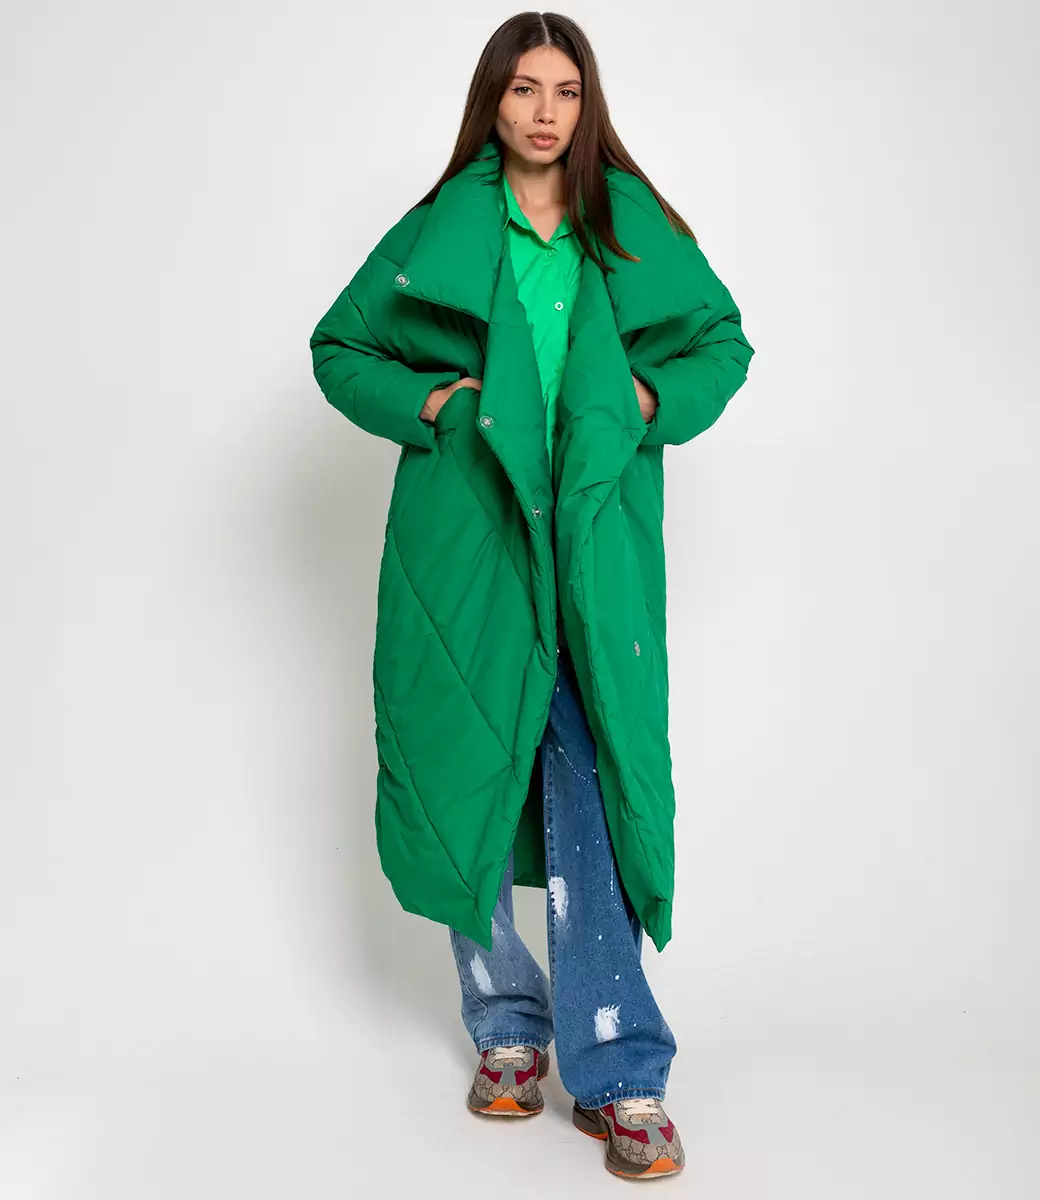 Пальто #БШ1290-1, зеленый